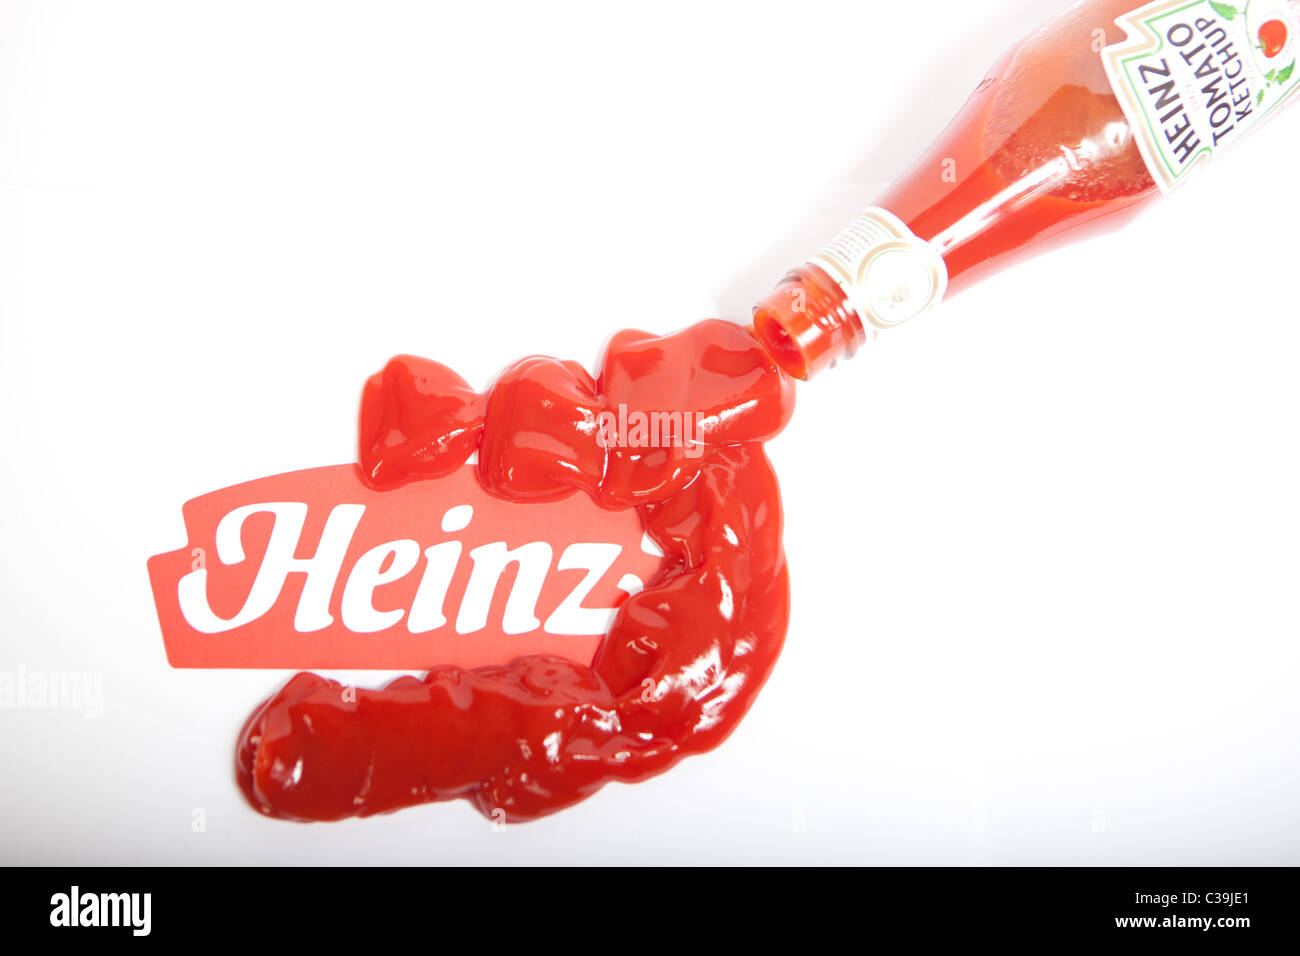 Imagen ilustrativa de la Heinz logotipo y su ketchup. Foto de stock